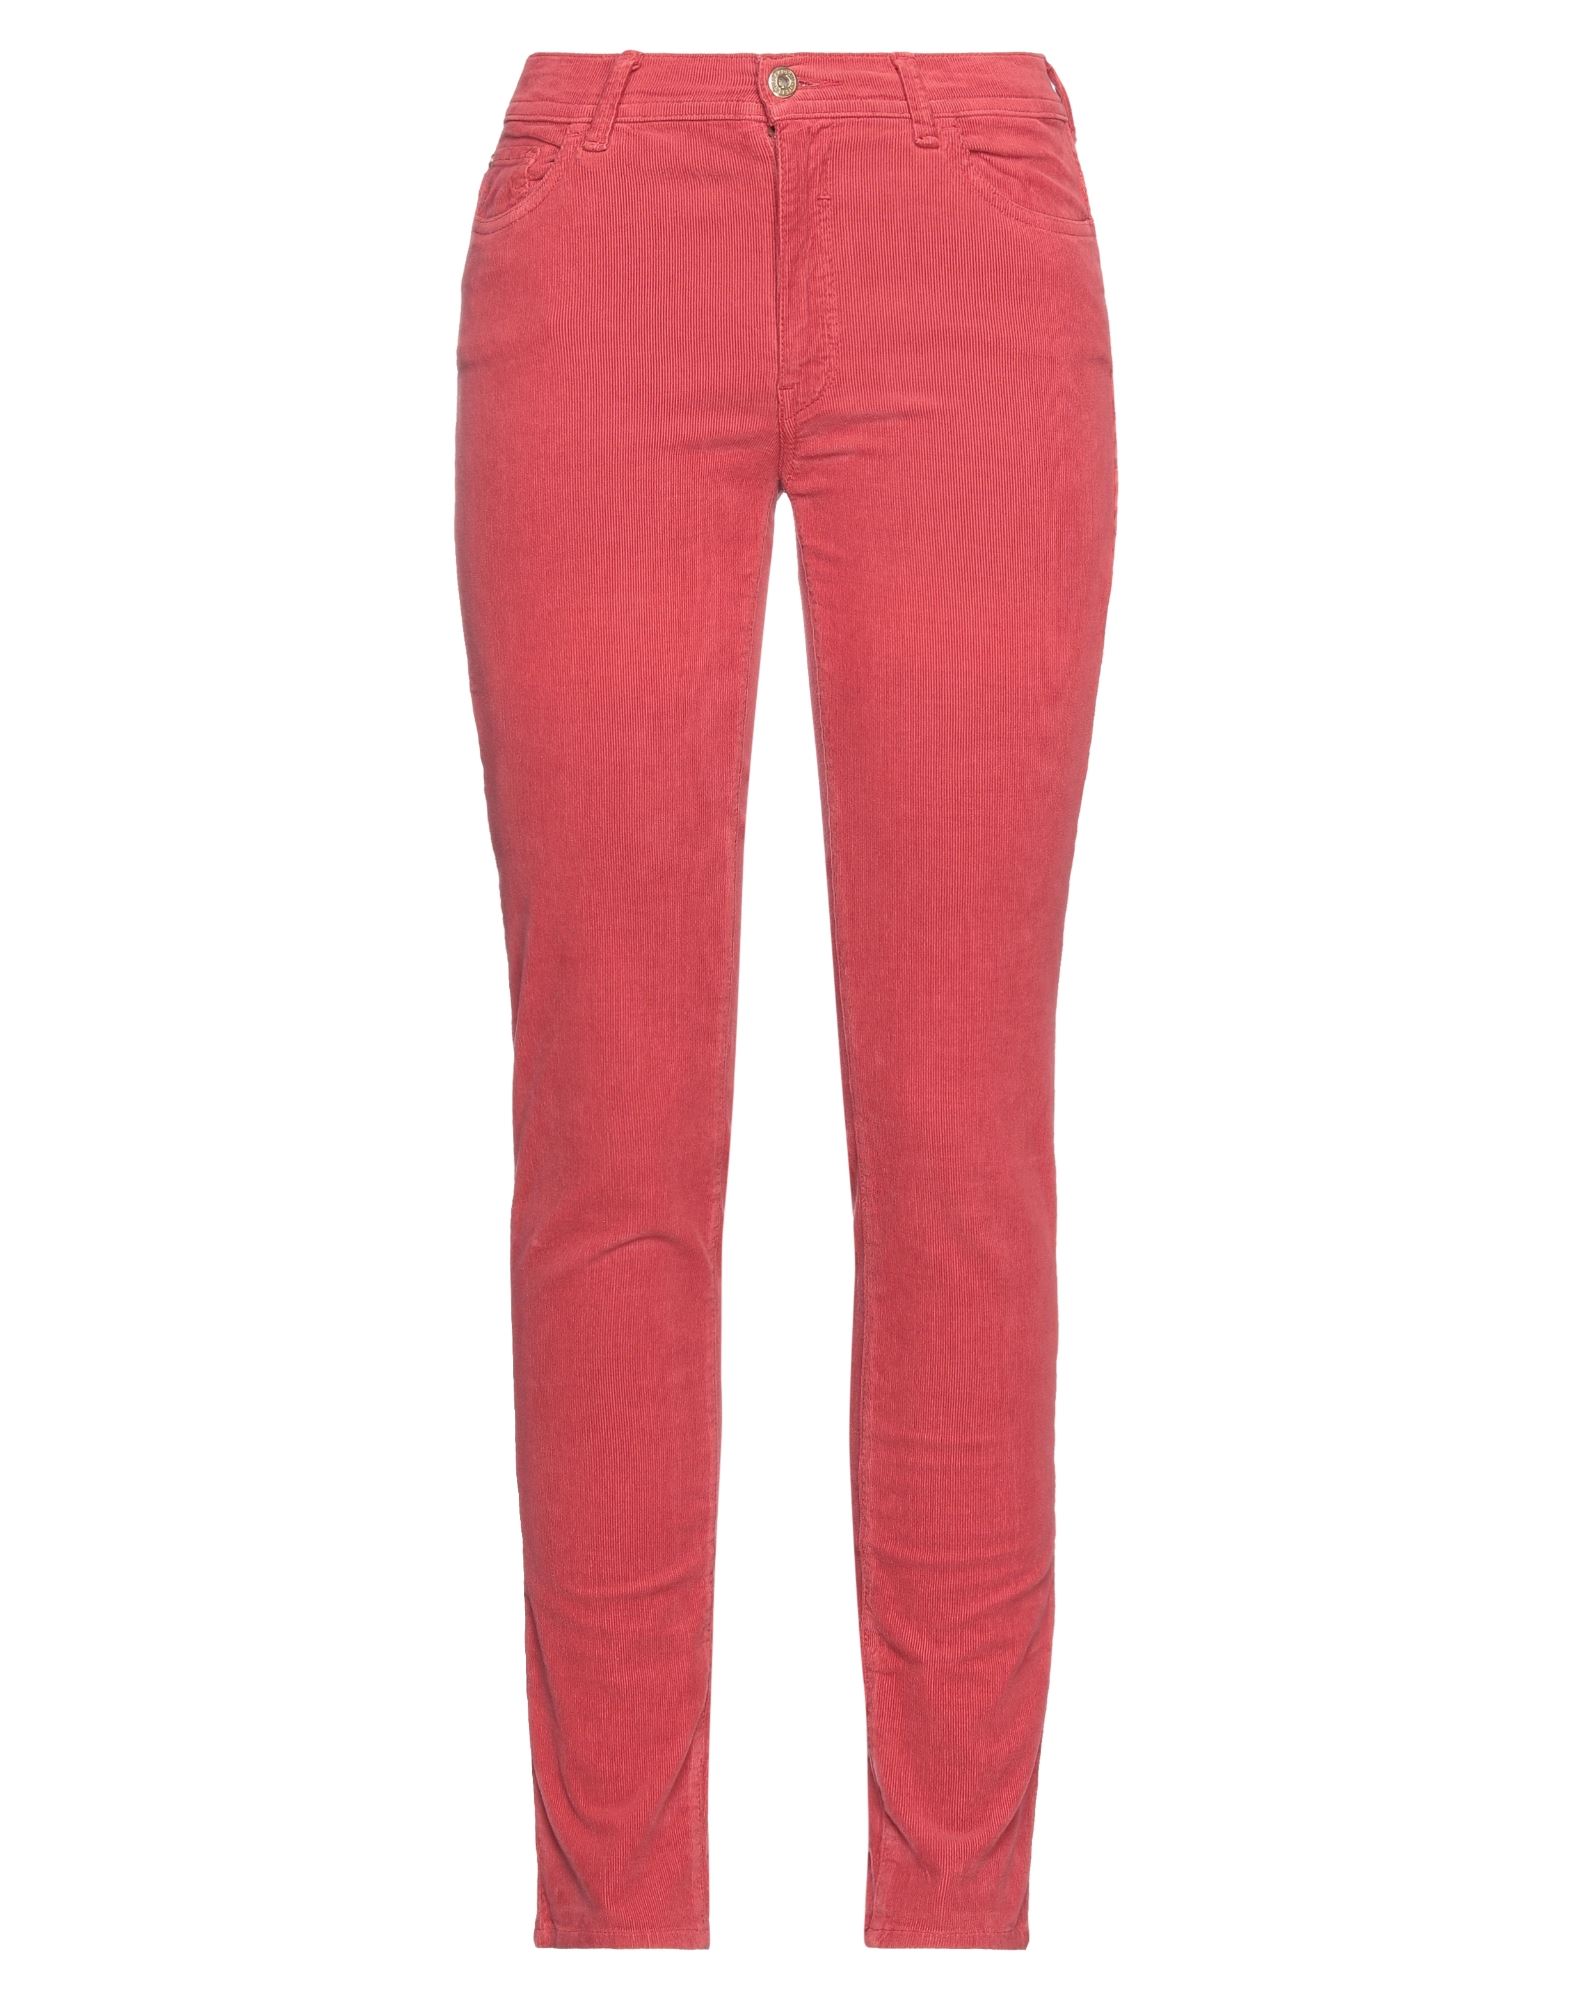 Shop Trussardi Jeans Woman Pants Brick Red Size 29 Cotton, Elastane